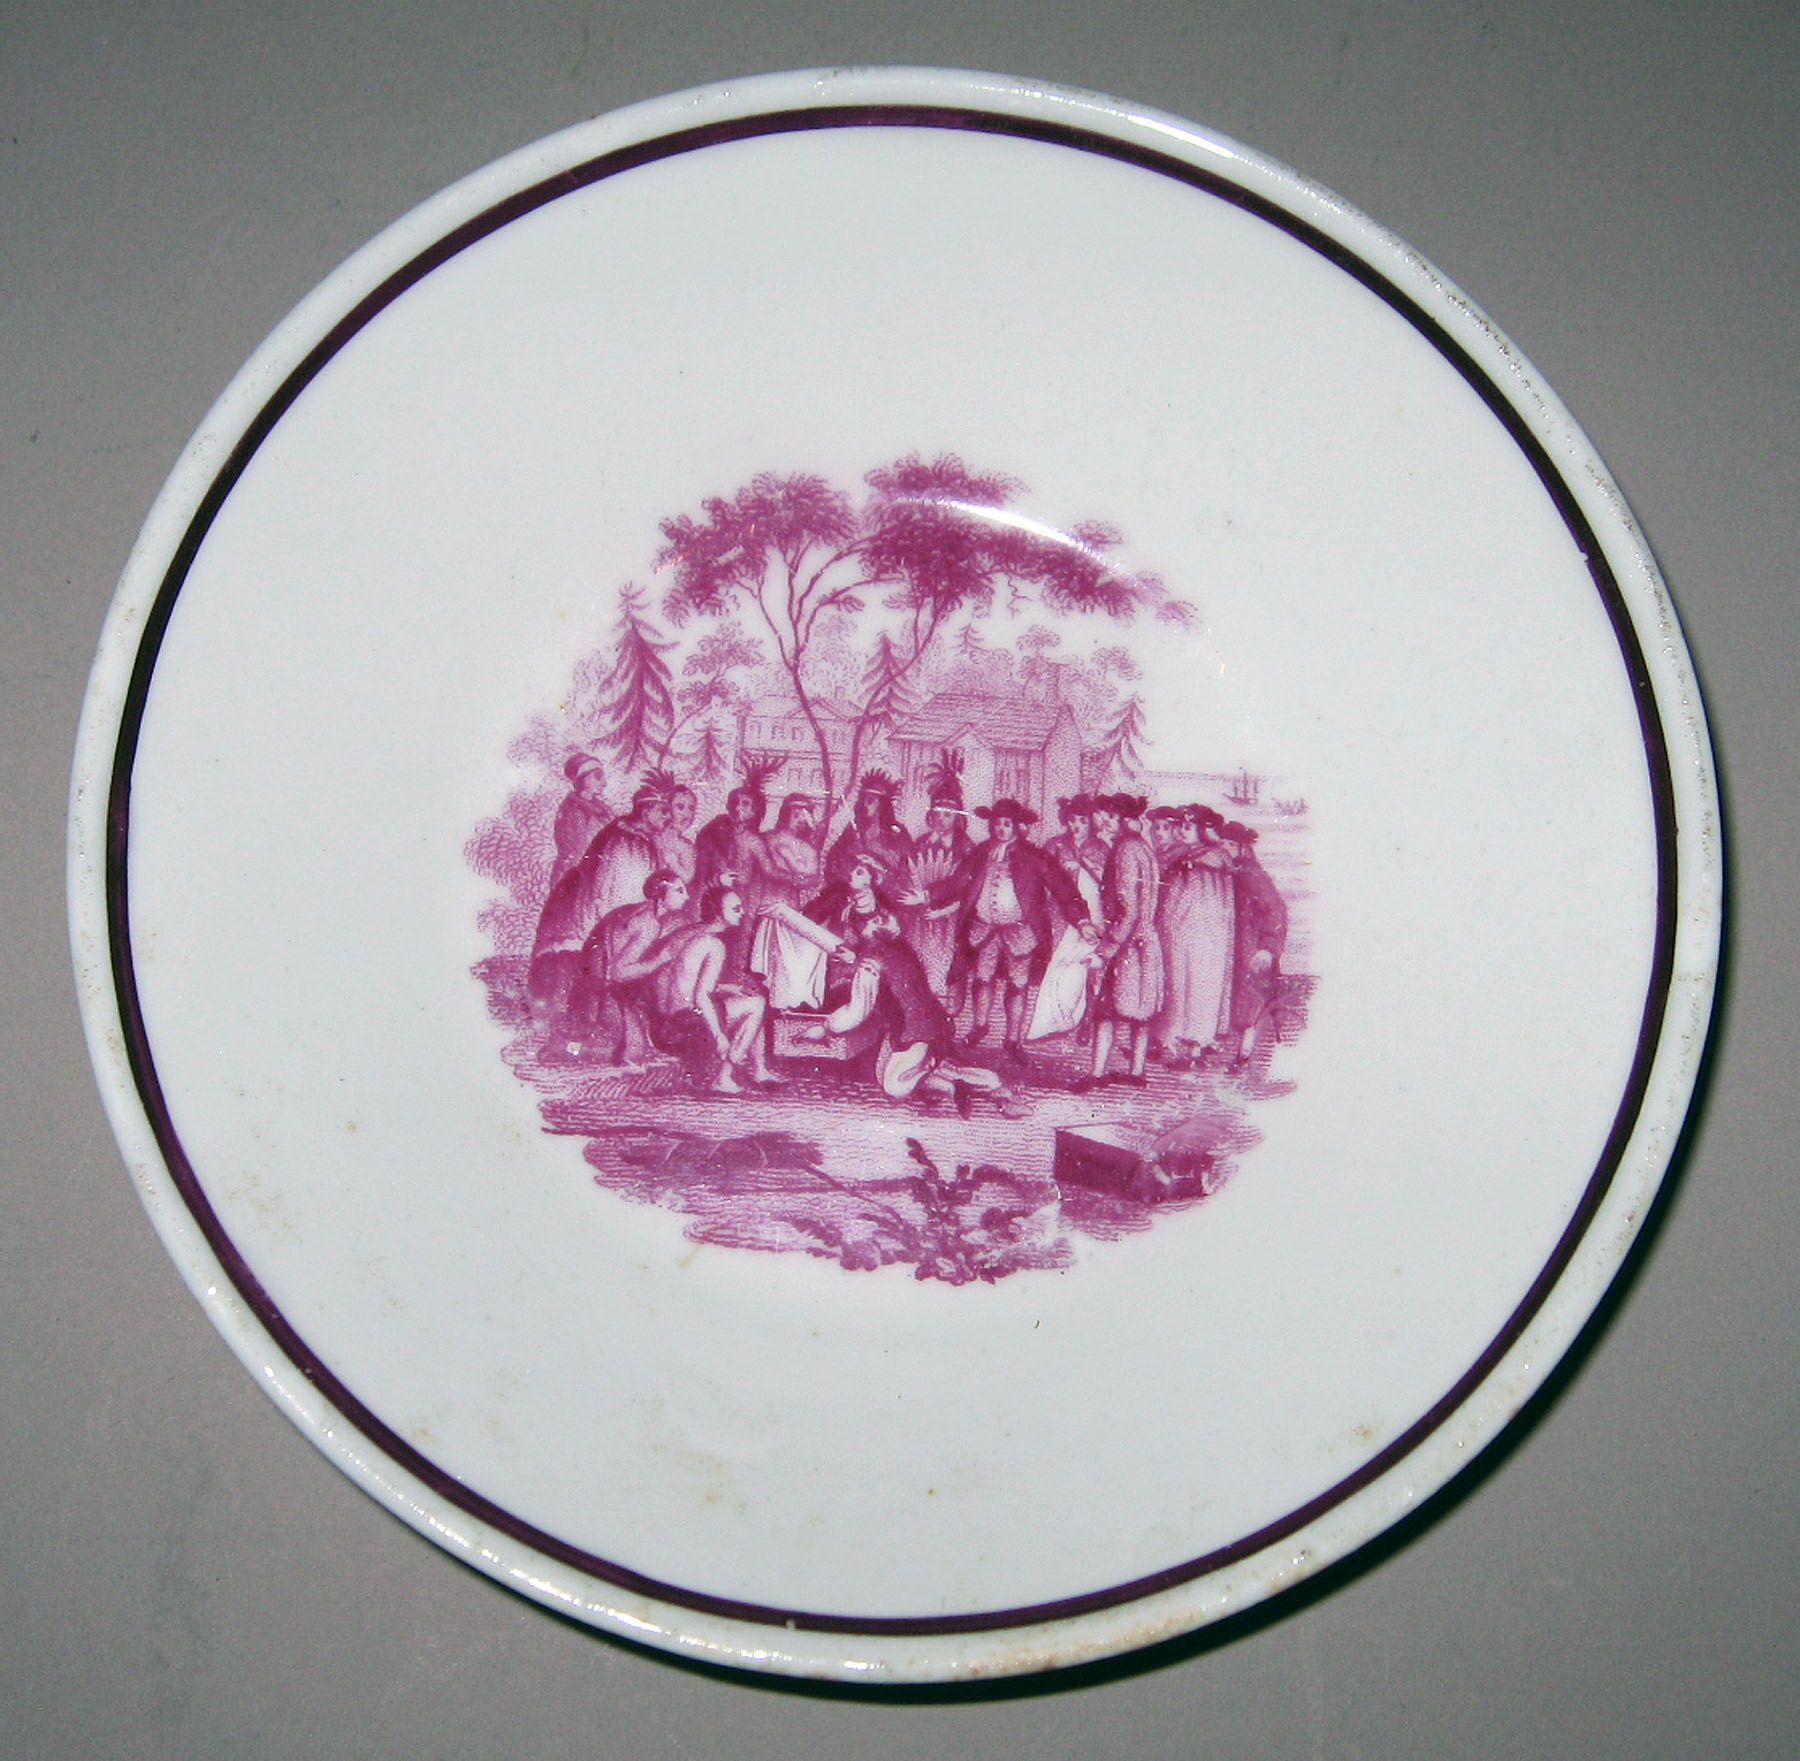 1964.1903.001 Porcelain saucer